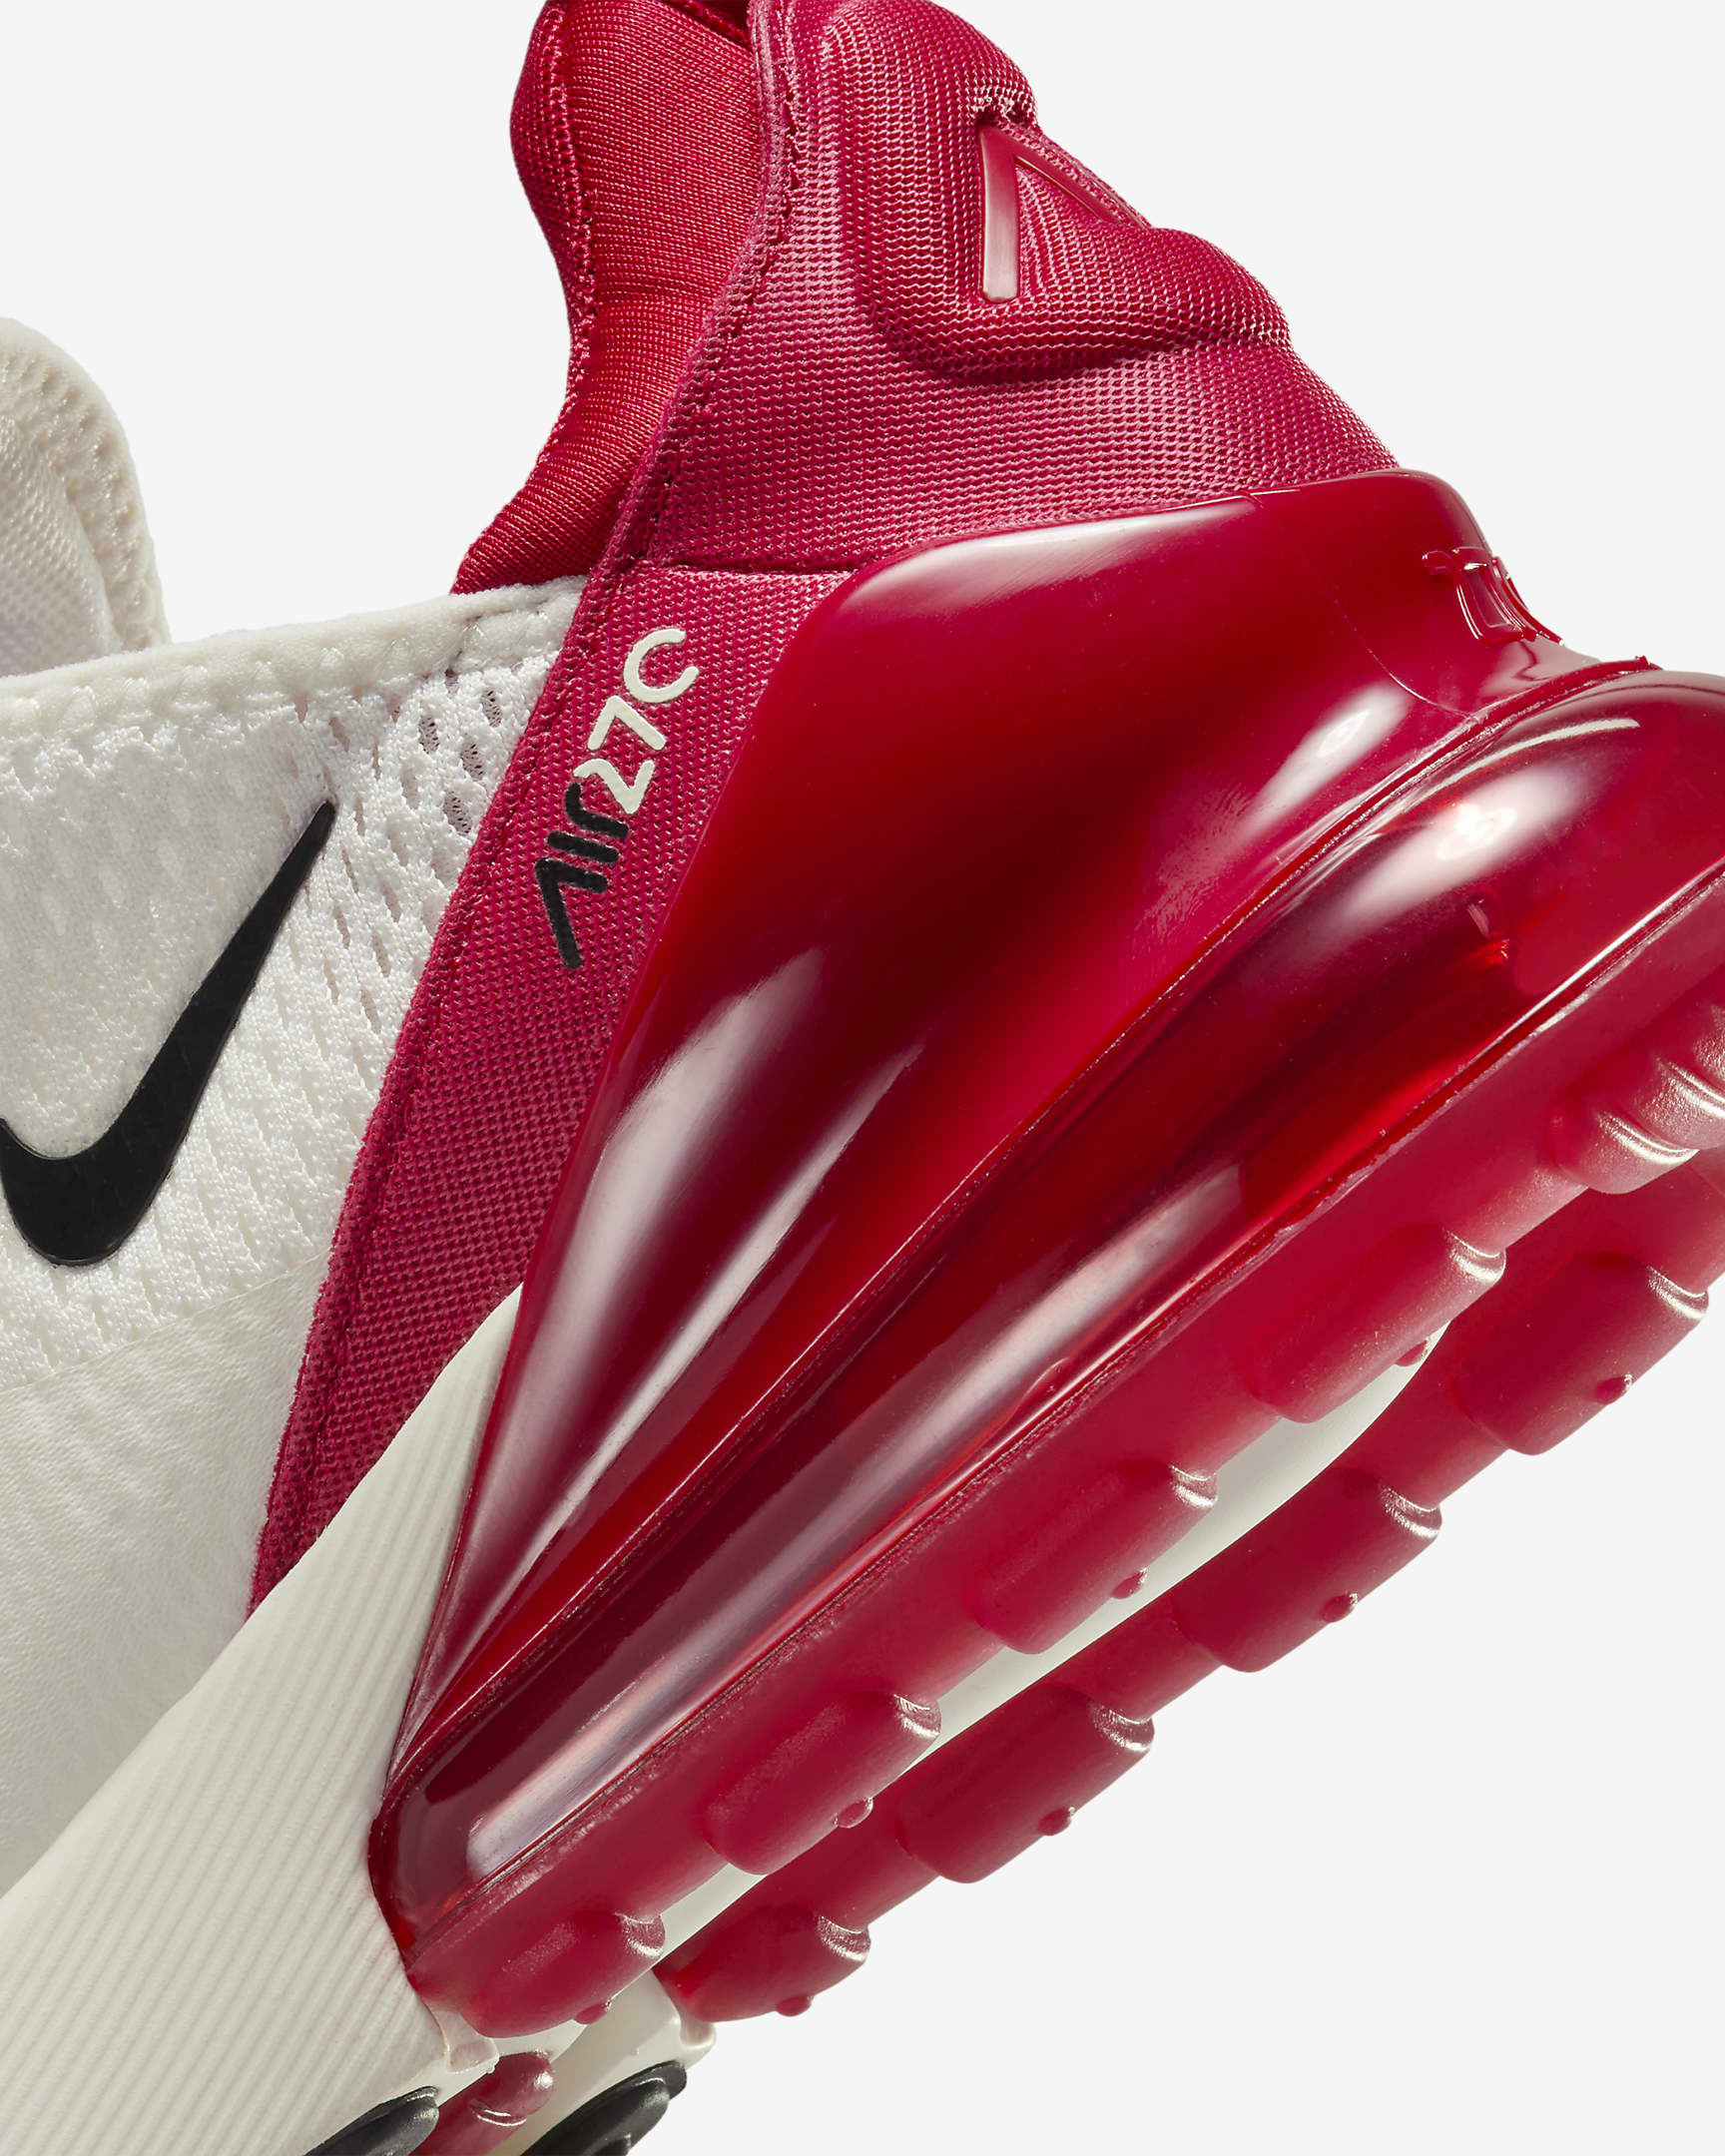 Chaussure Nike Air Max 270 pour femme - Gym Red/Noir/Sail